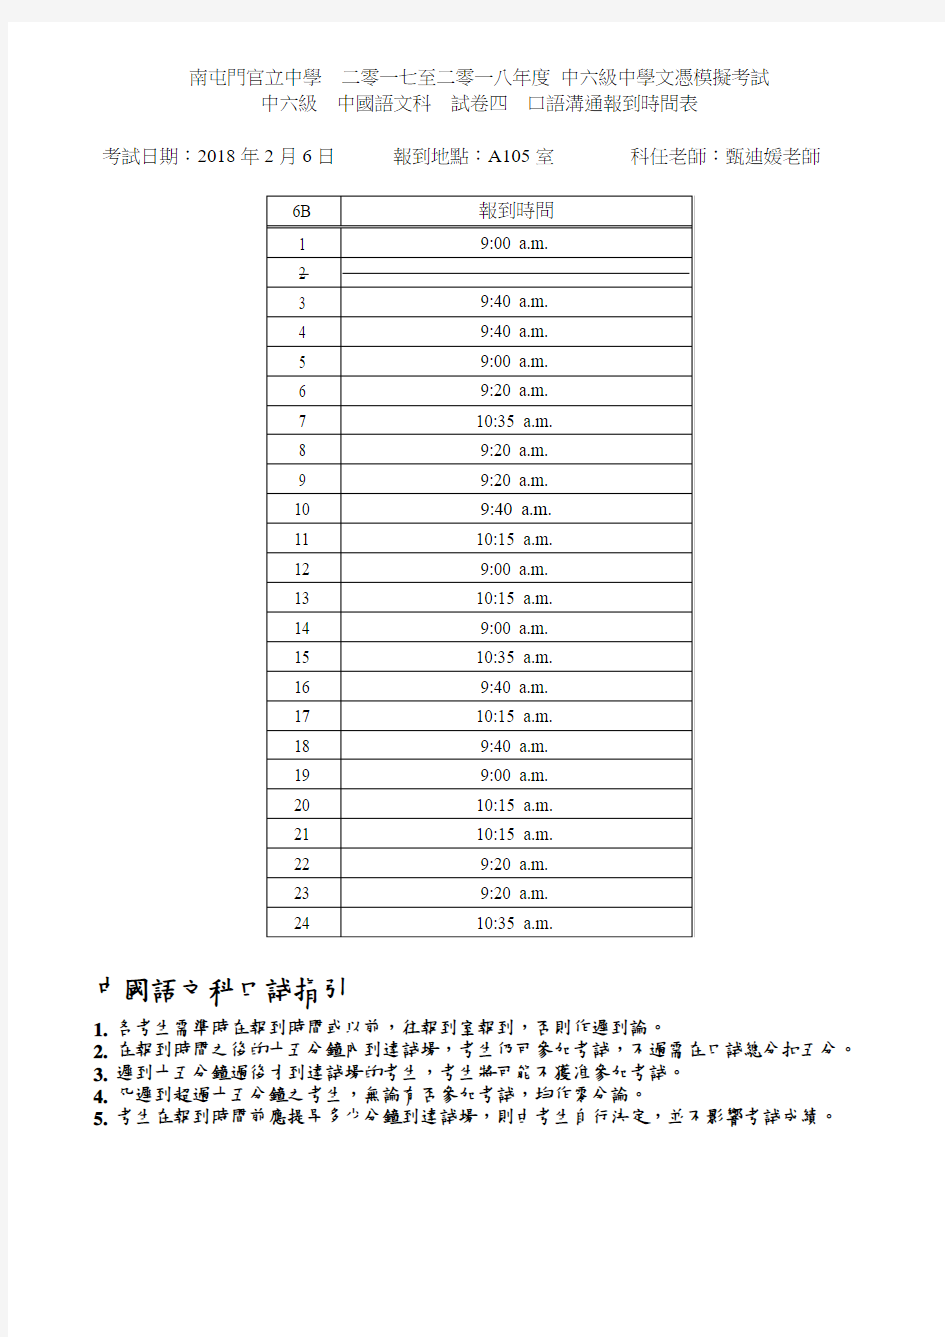 中六级中国语文科试卷四口语沟通报到时间表